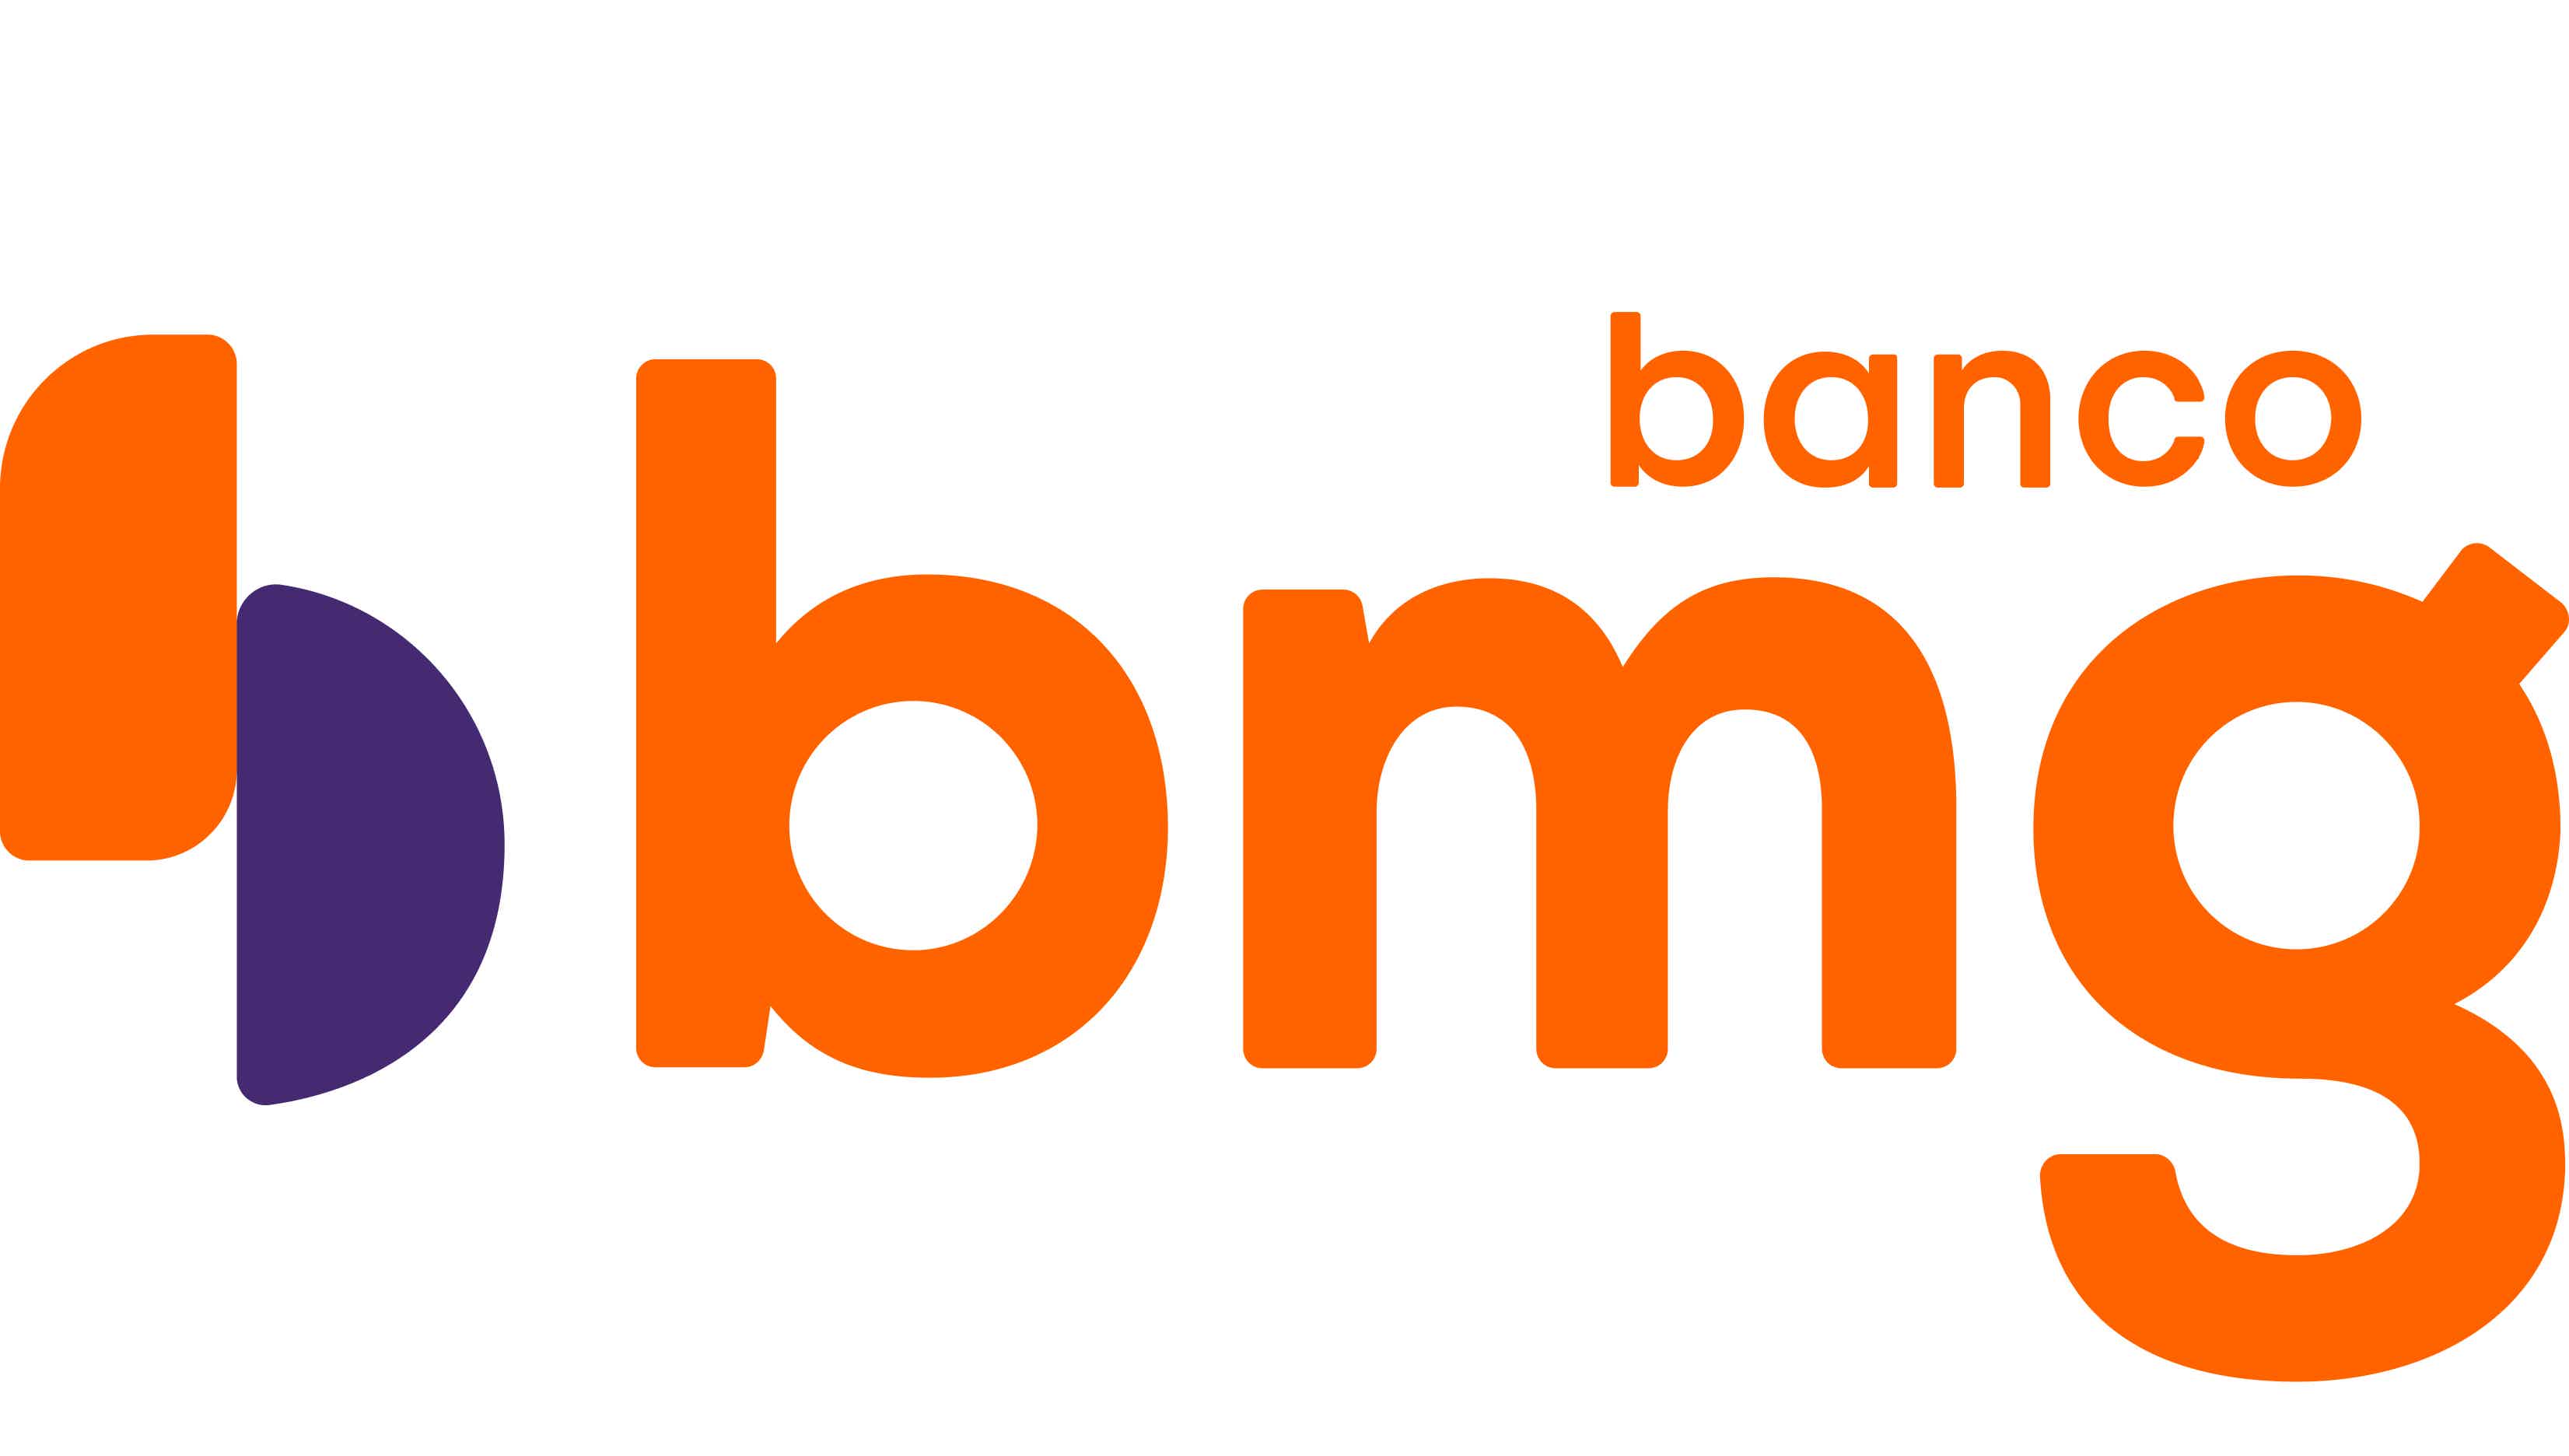 Os cartões BMG oferecem diversos benefícios. Confira! Fonte: BMG.